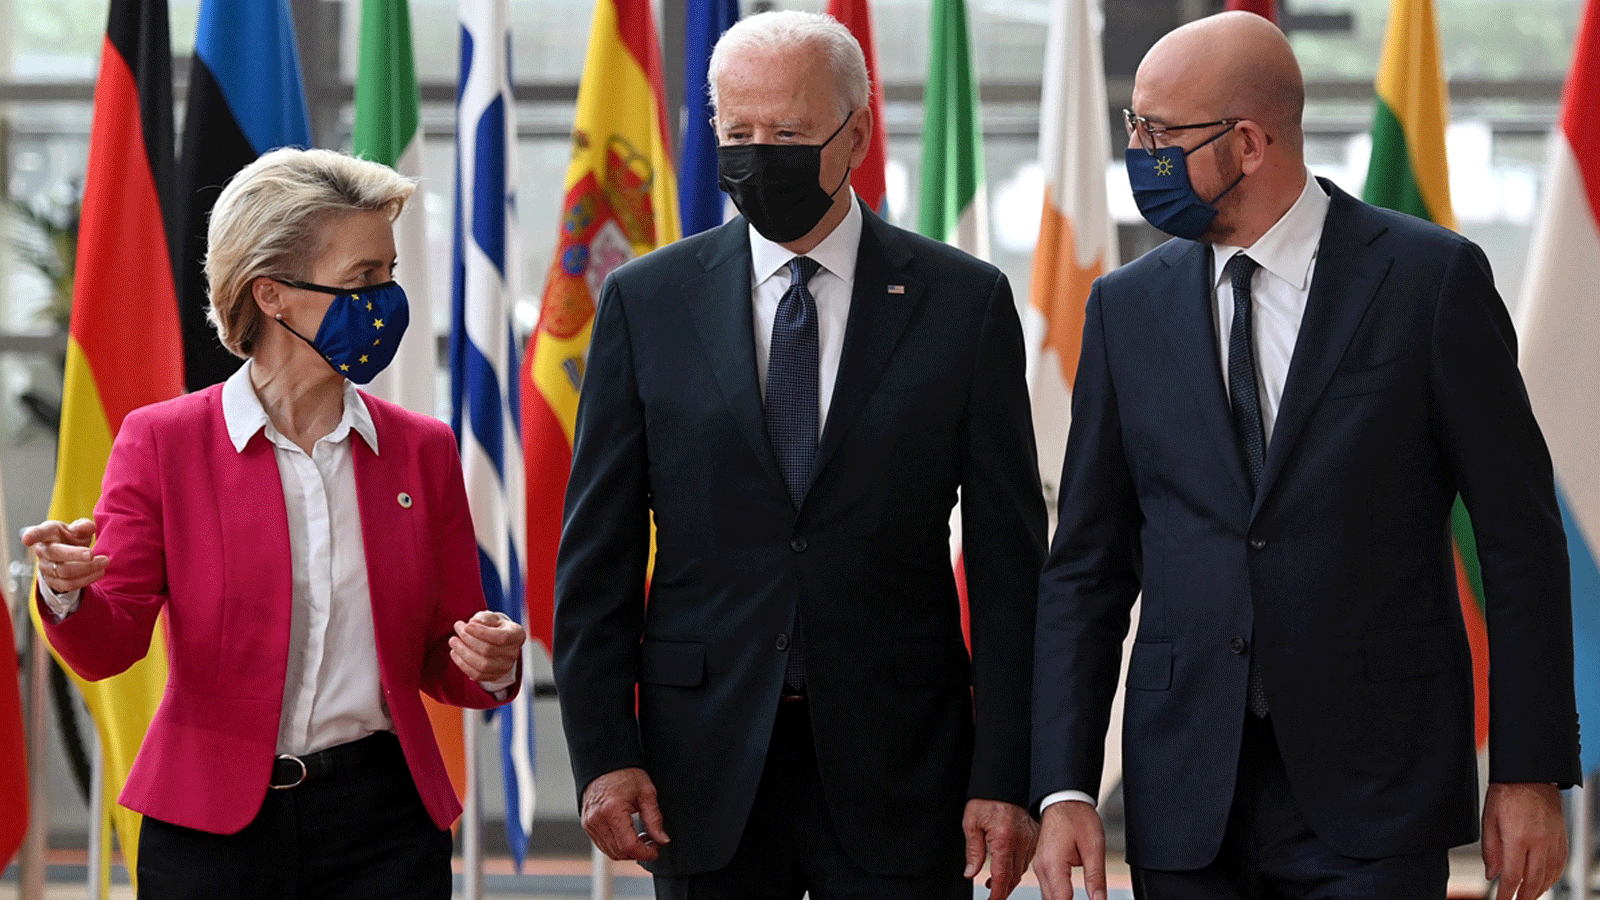 (من اليسار) رئيسة مفوضية الاتحاد الأوروبي أورسولا فون دير لاين والرئيس الأميركي جو بايدن ورئيس المجلس الأوروبي تشارلز ميشيل يصلون لحضور القمة الأوروبية الأمريكية في مقر الاتحاد الأوروبي في بروكسل يوم الثلاثاء 15 حزيران/ يونيو 2021